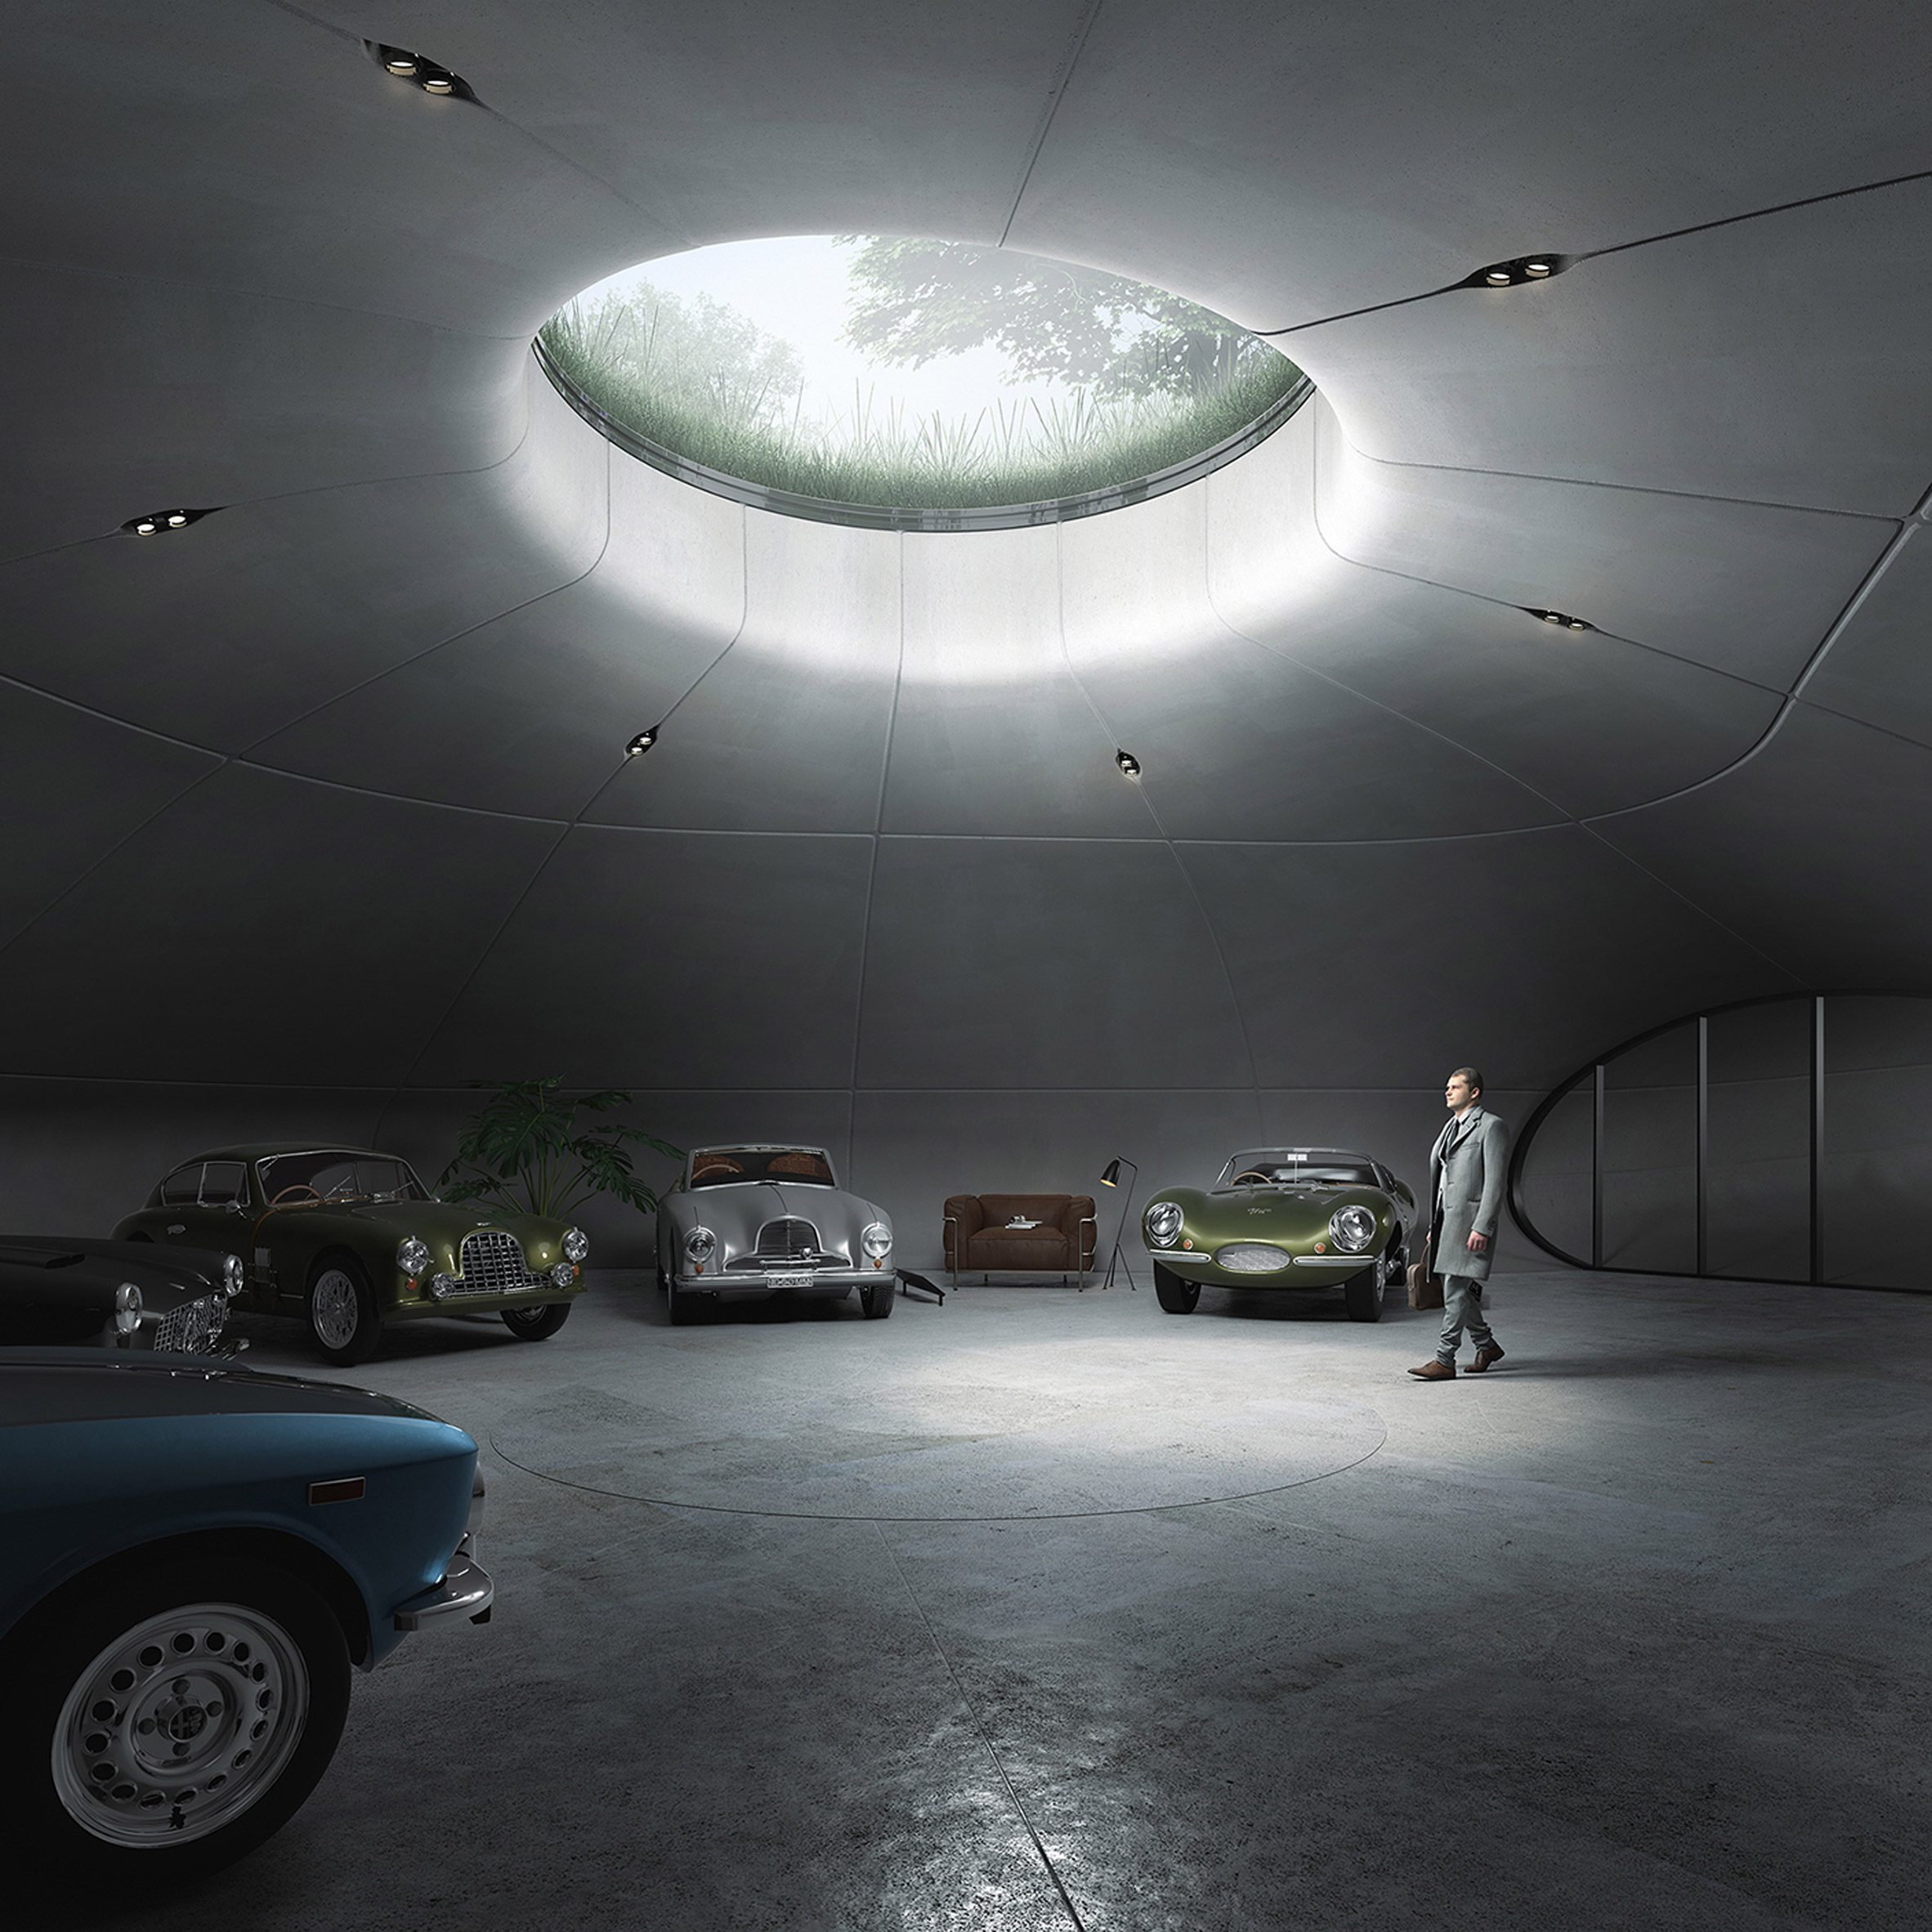 Showroom siêu xe đẳng cấp VOV Super Cars sắp khai trương tại TPHCM   CarPassionvn  Cộng Đồng Xe  Đam mê